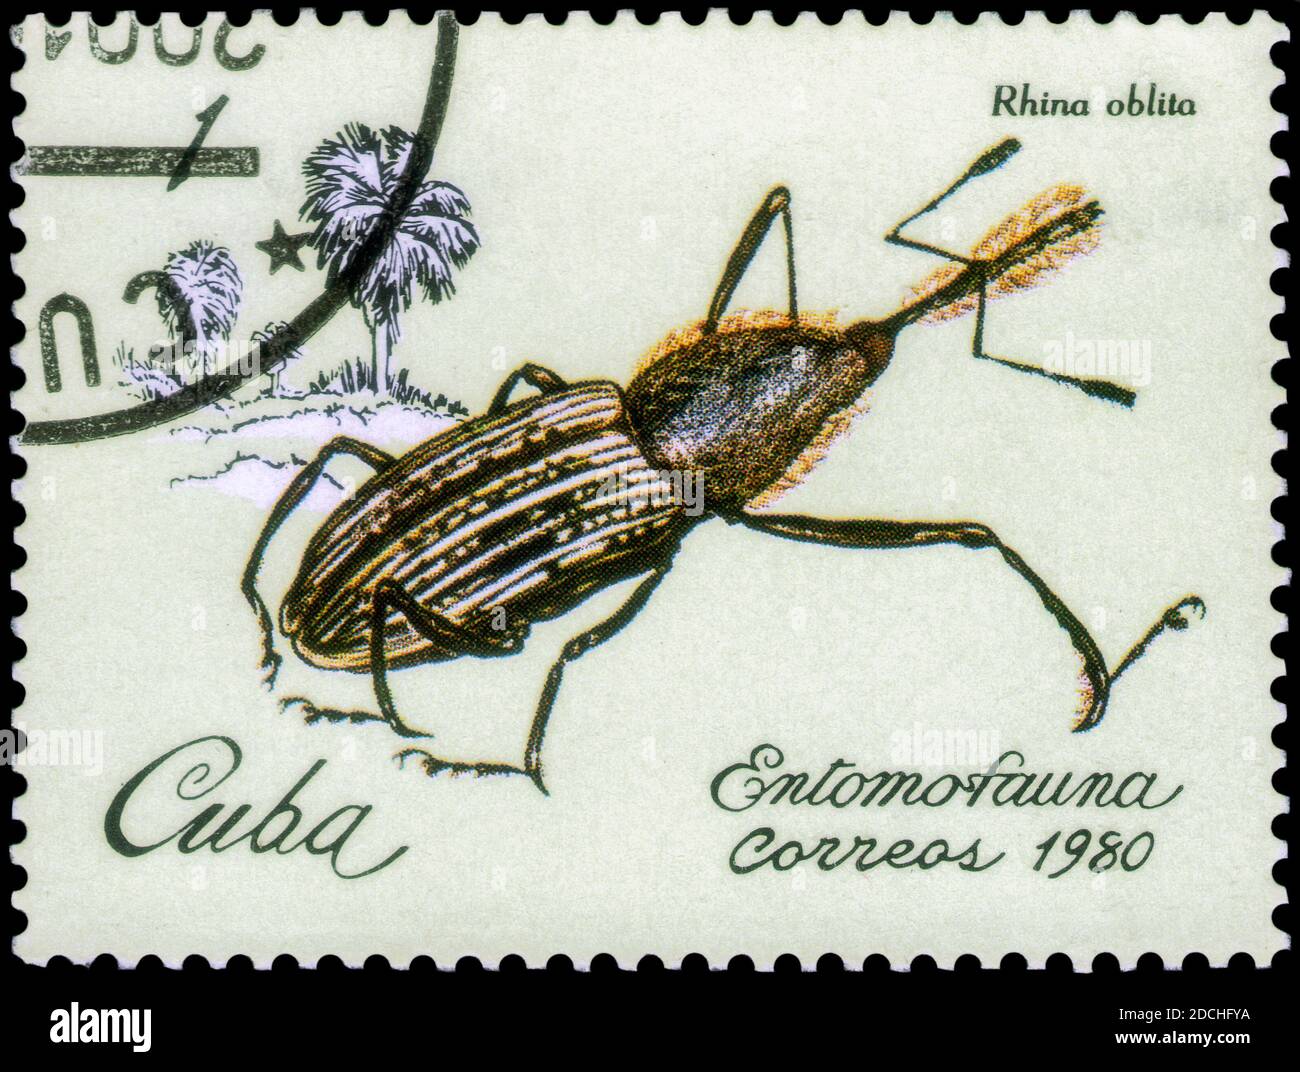 San Pietroburgo, Russia - 12 novembre 2020: Francobollo stampato a Cuba con l'immagine del Weevil, Rhina oblita, intorno al 1980 Foto Stock